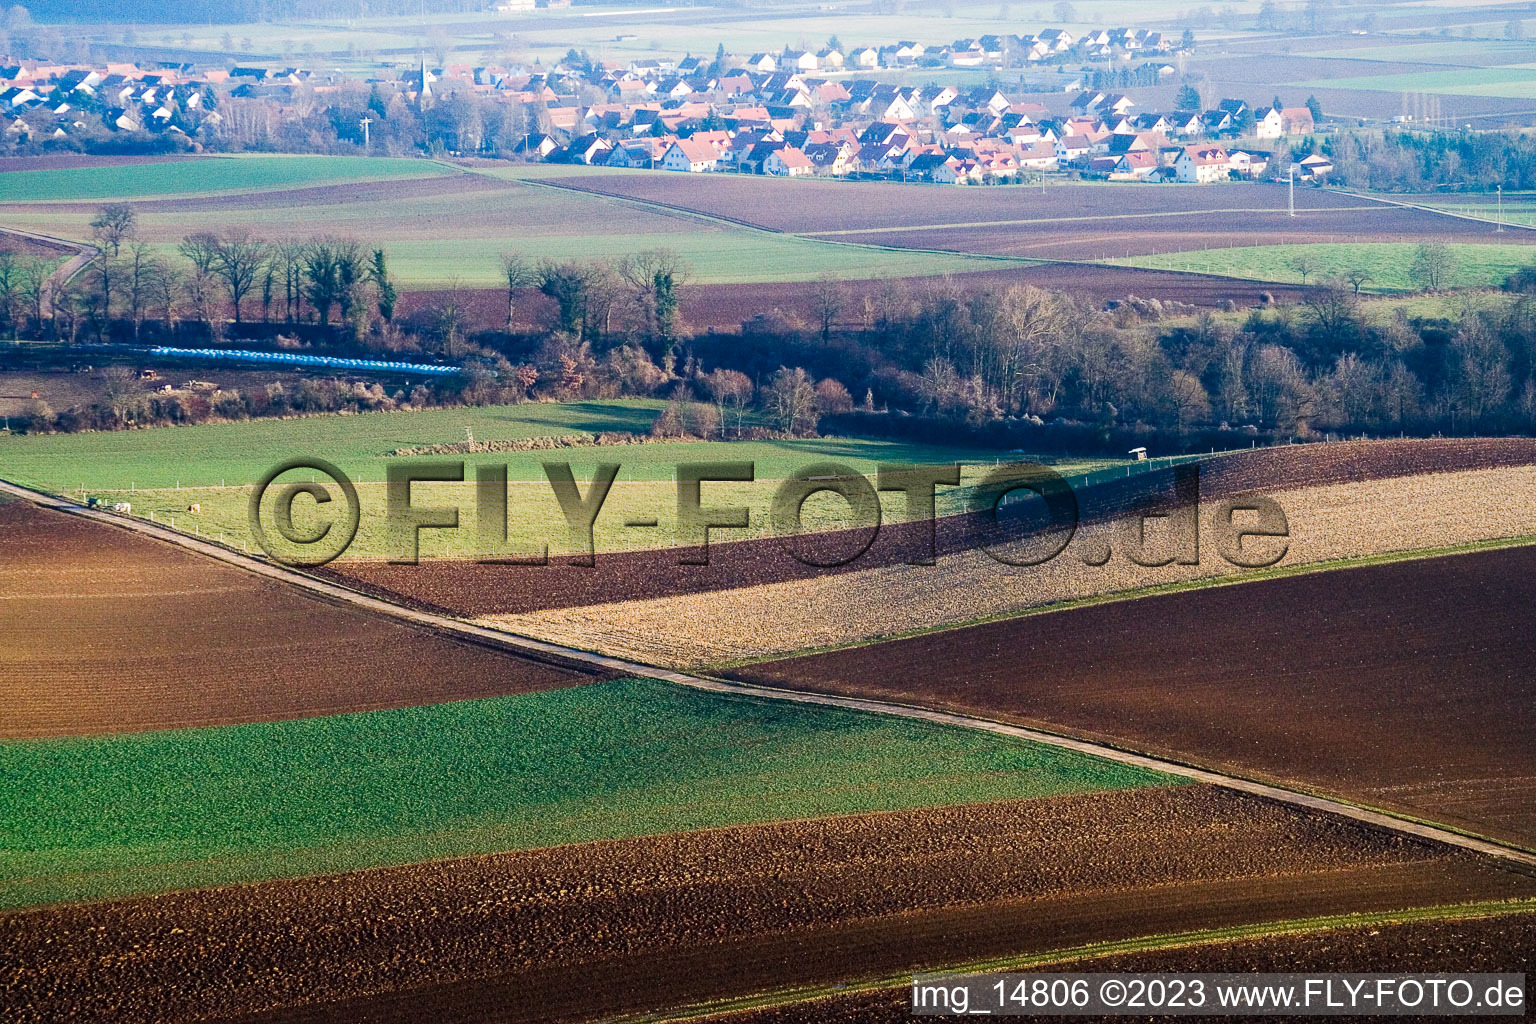 Vue aérienne de De l'ouest à Freckenfeld dans le département Rhénanie-Palatinat, Allemagne